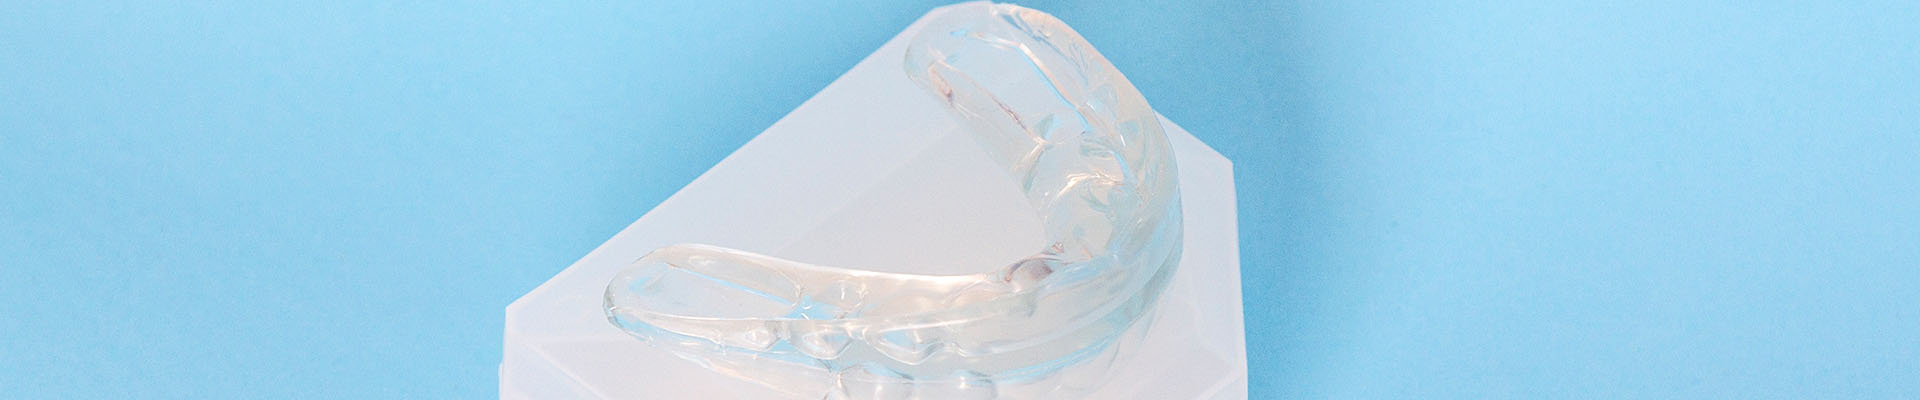 Clínica Dental Andrea Compte, tu Centro Odontológico especializado. Ortodoncia en Peñíscola. Protector bucal dental de silicona.